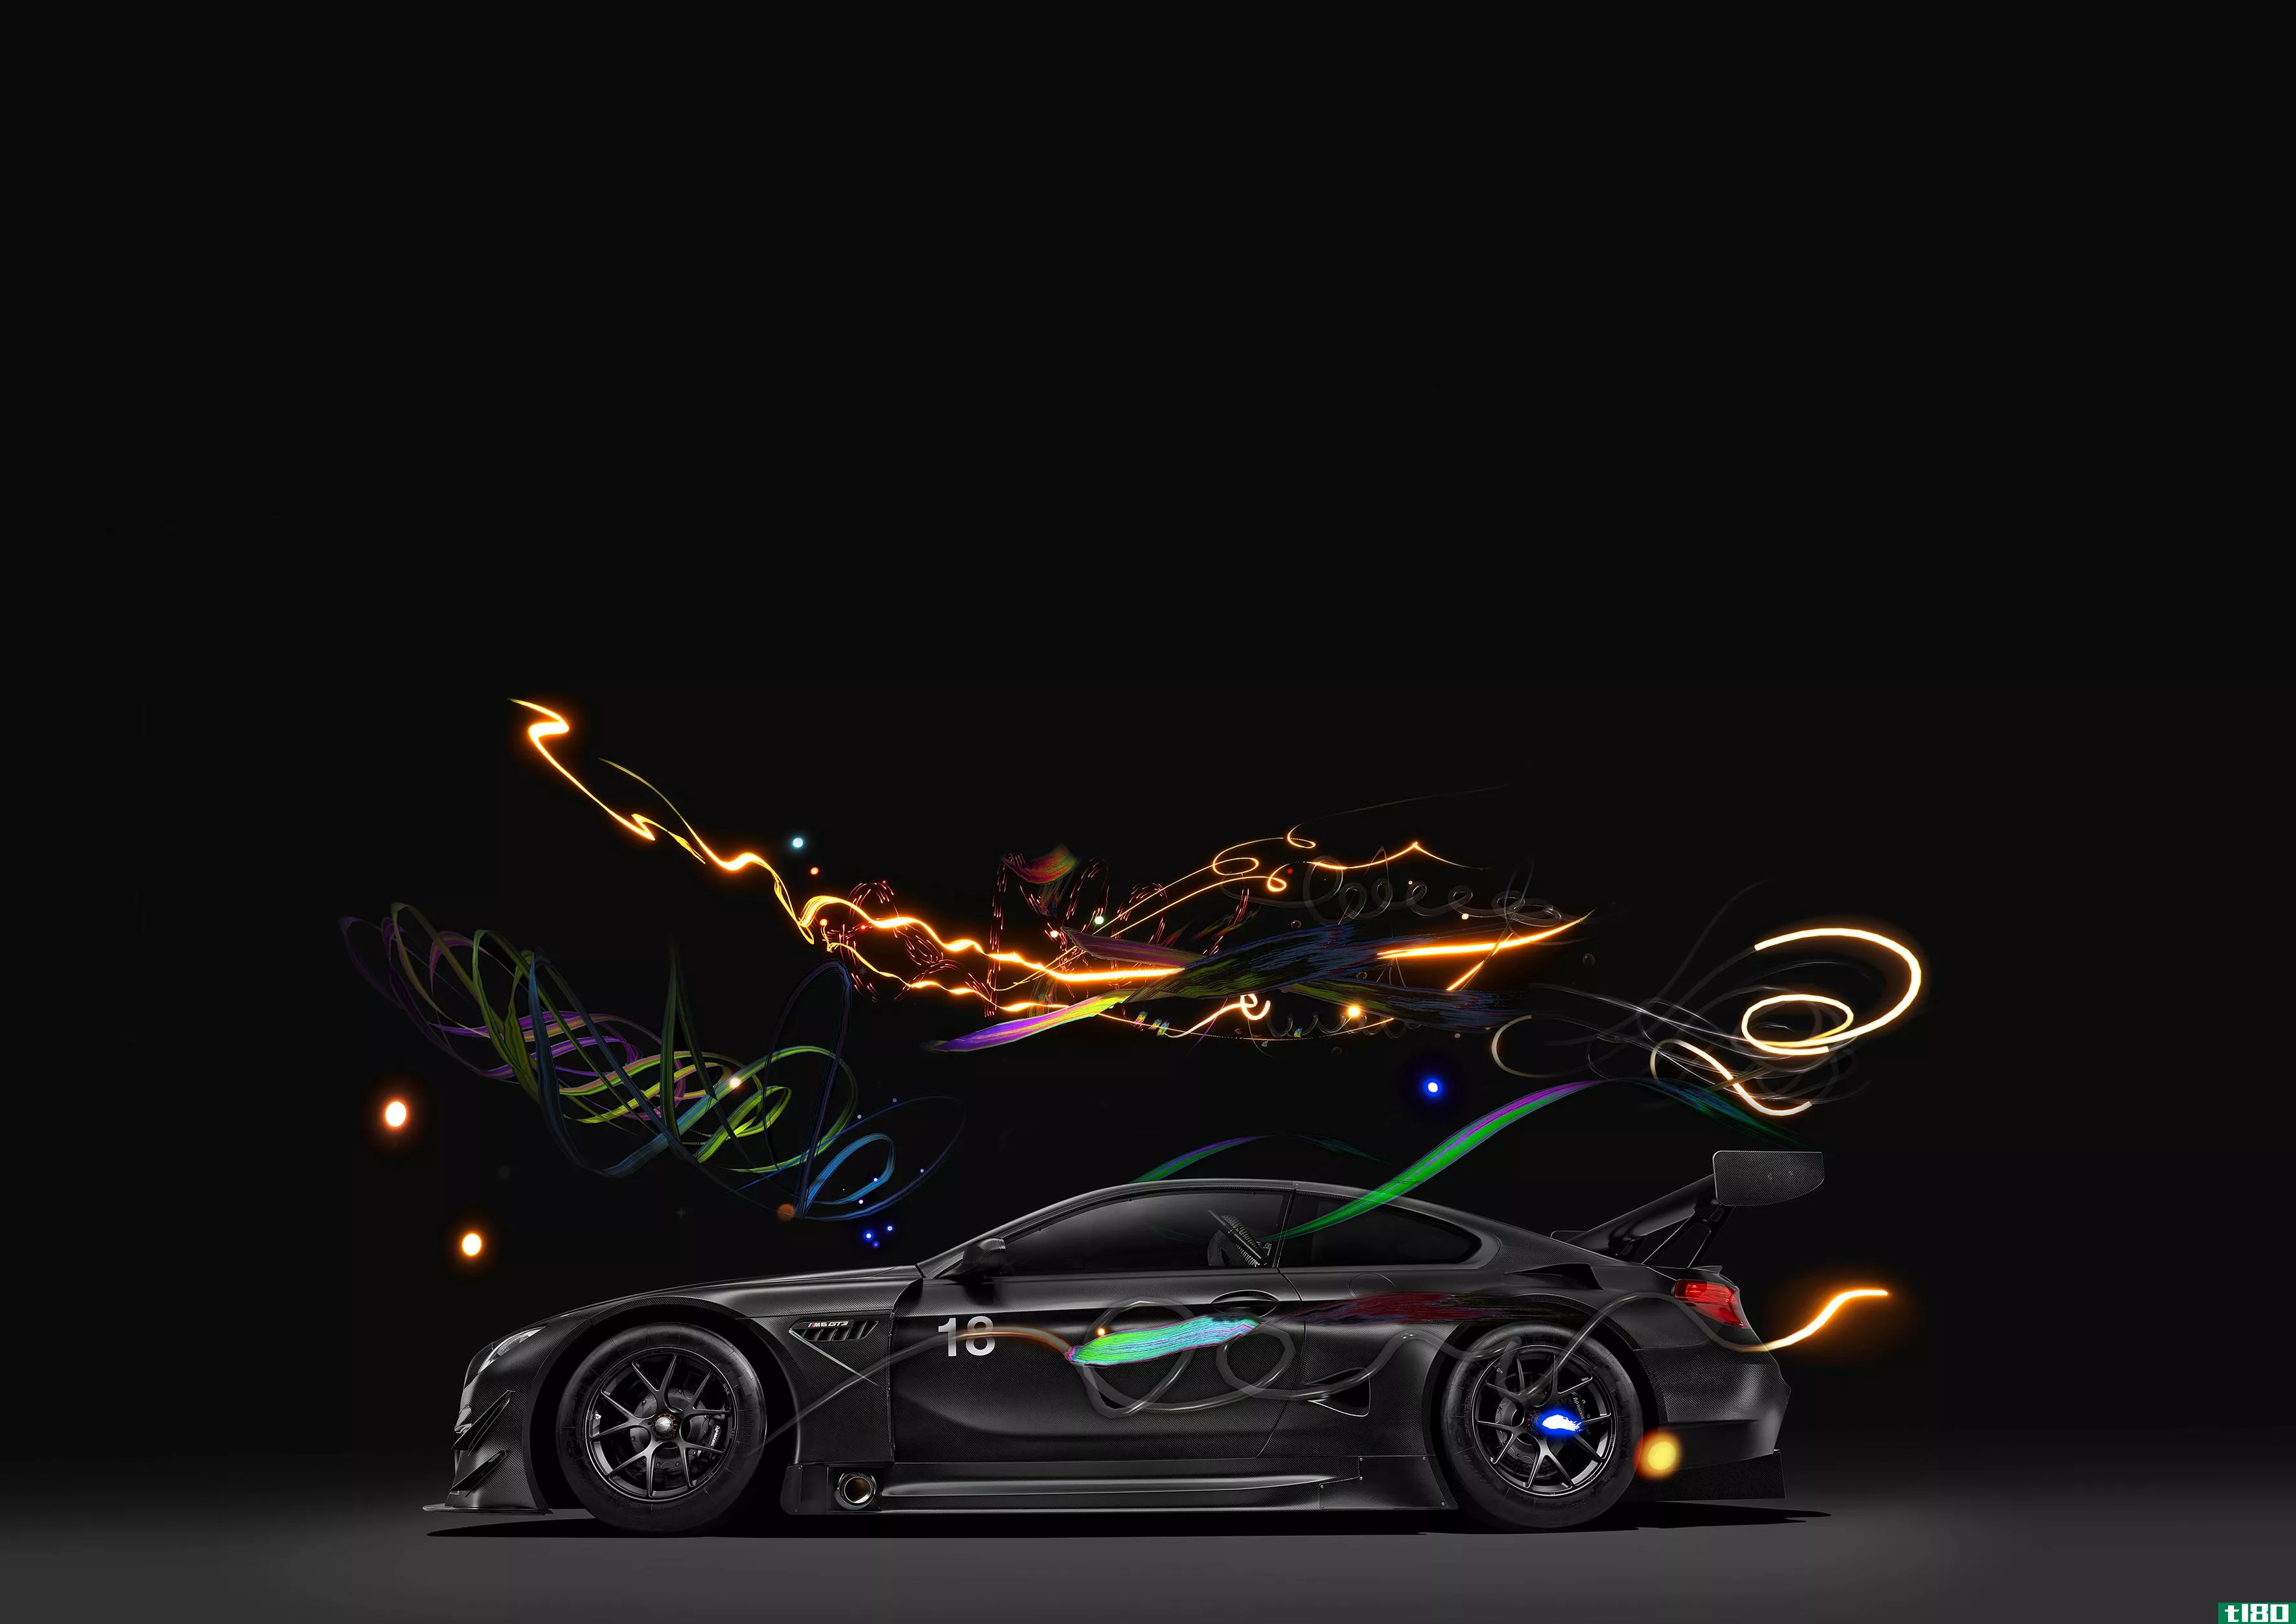 新宝马m6 gt3艺术车运行的速度和虚拟现实的想象力